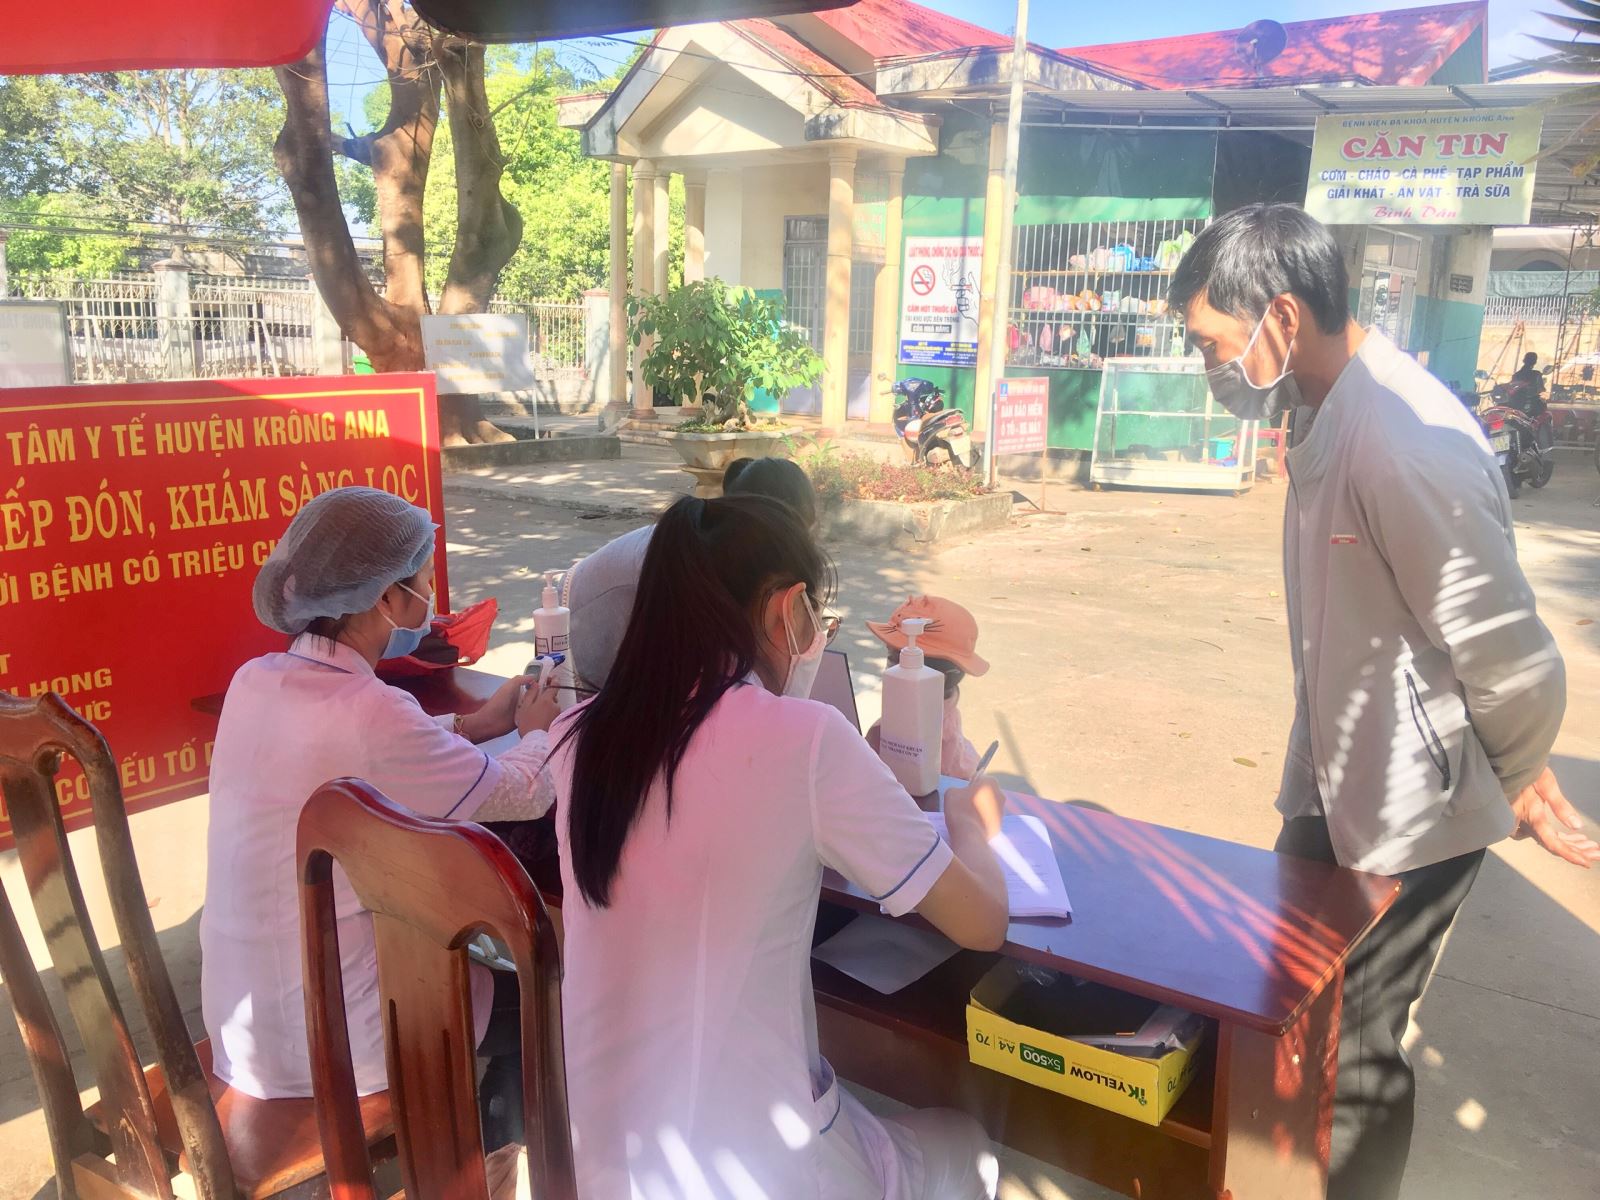  nhân viên y tế hướng dẫn khai báo y tế cho người đến khám chữa bệnh tại TTYT Krông Ana